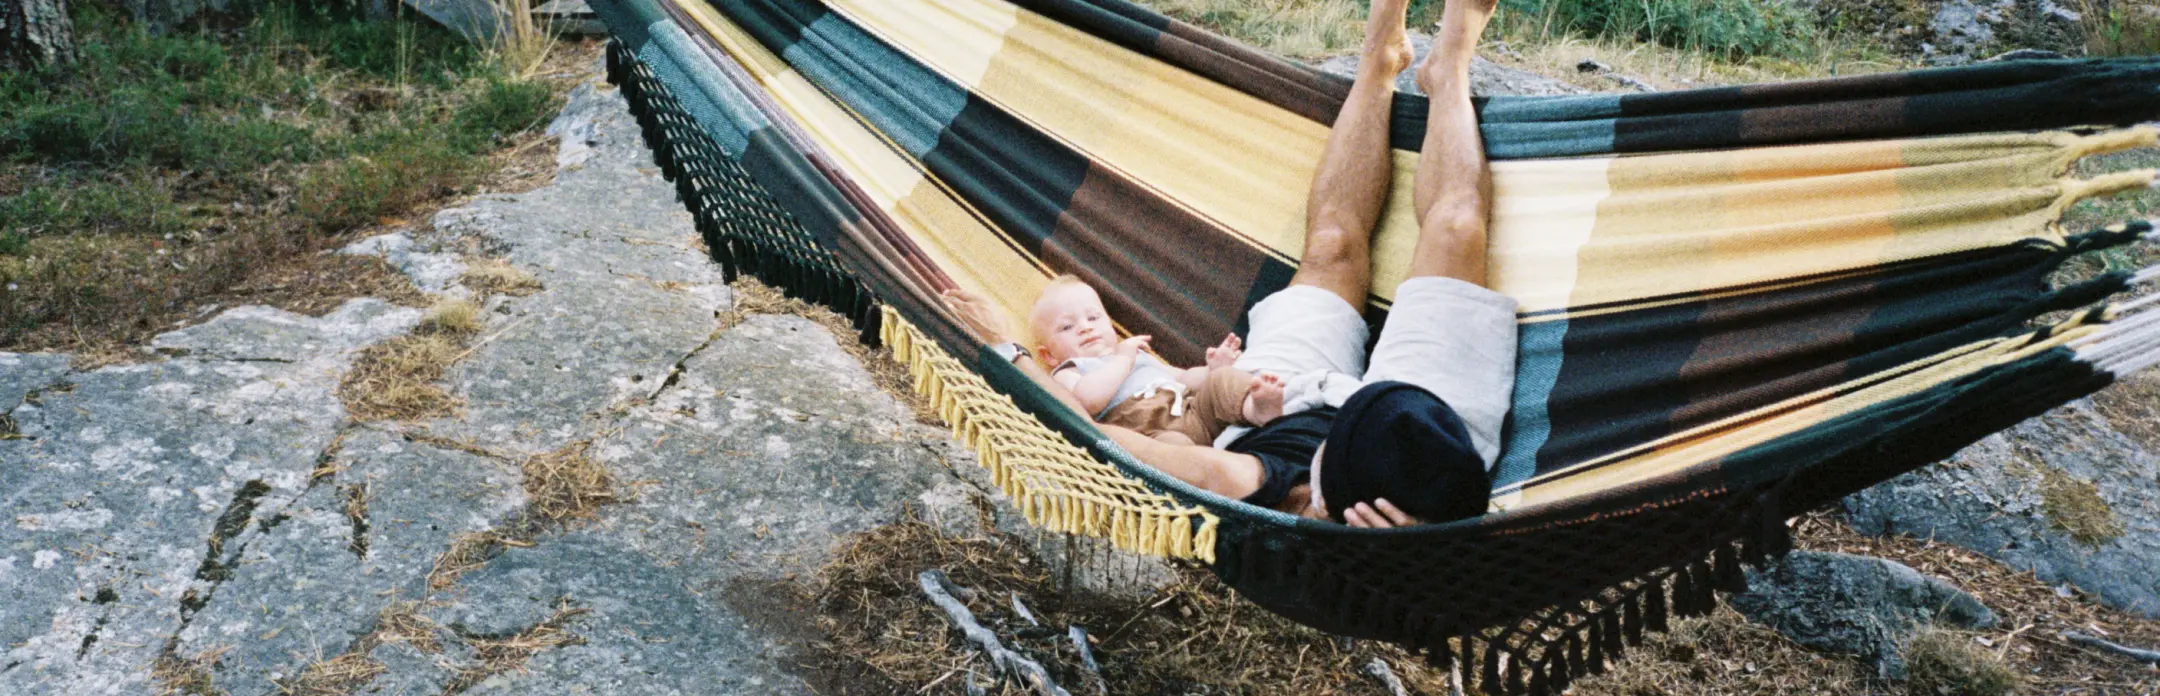 Una persona y un niño tumbados en una hamaca al aire libre, rodeados de naturaleza, con un pequeño invernadero al fondo.